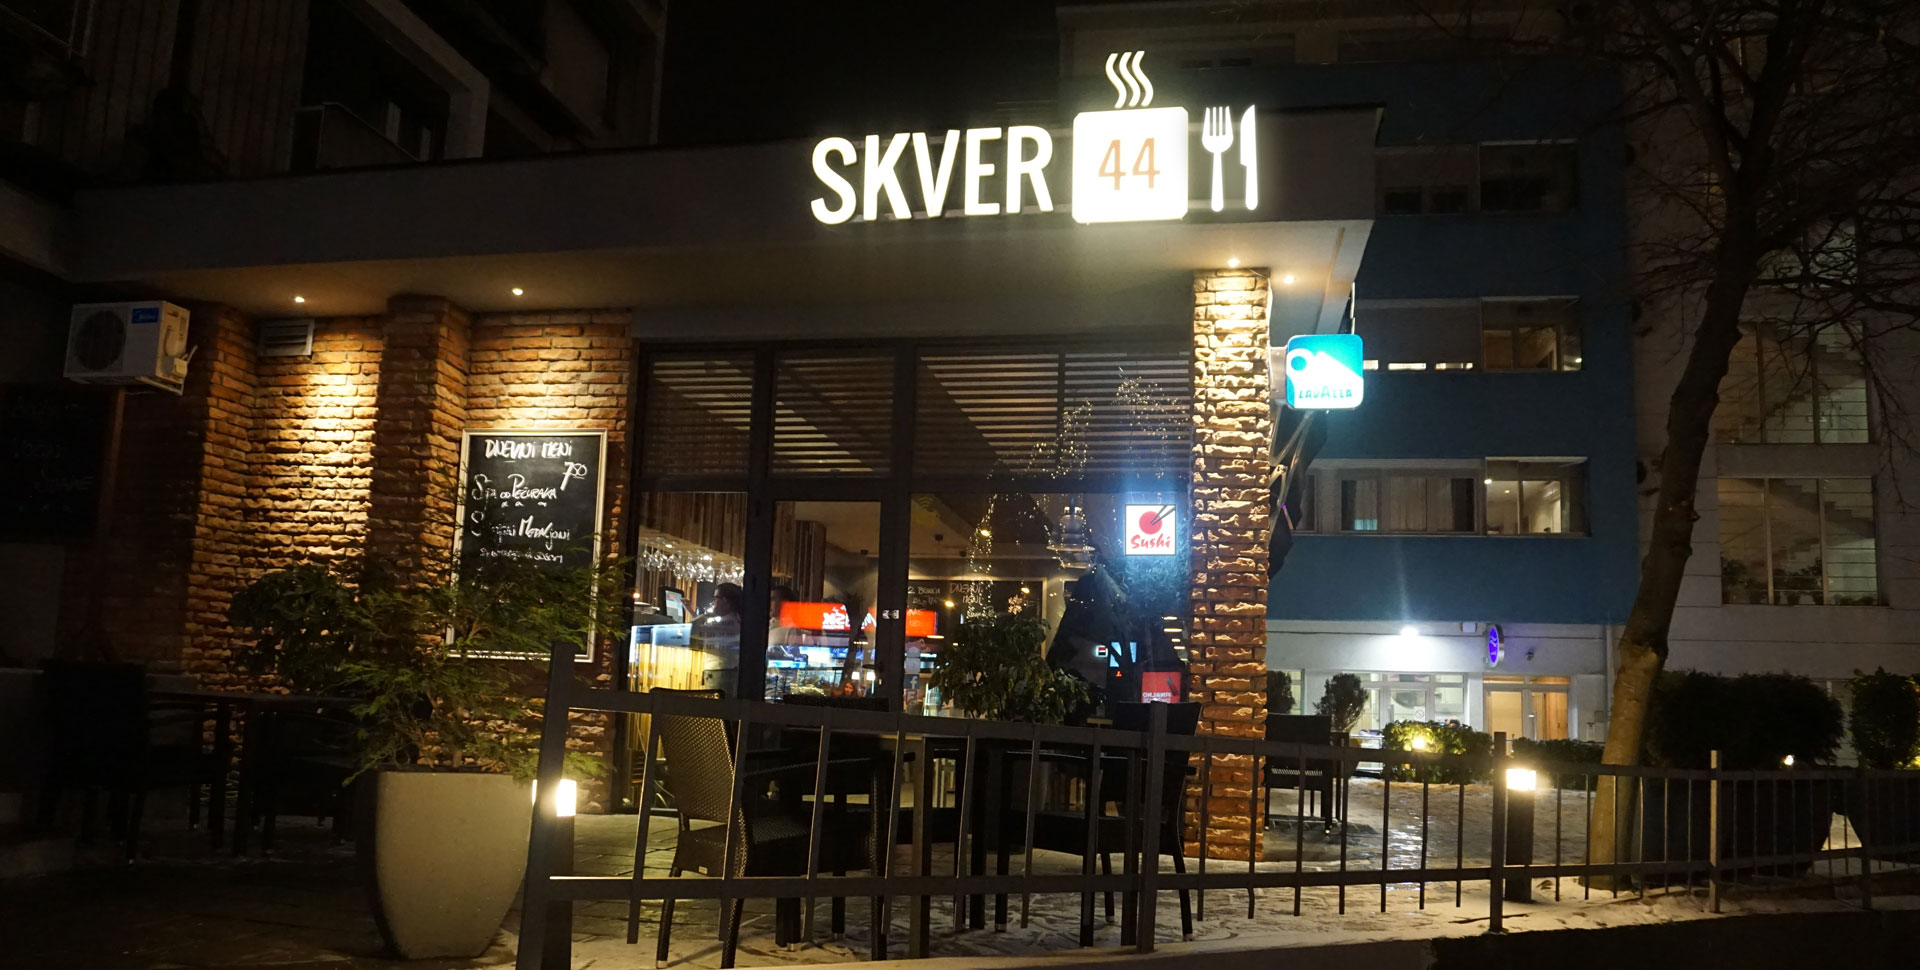 Dizajn logotipa i svetleće reklame za restoran SKVER 44